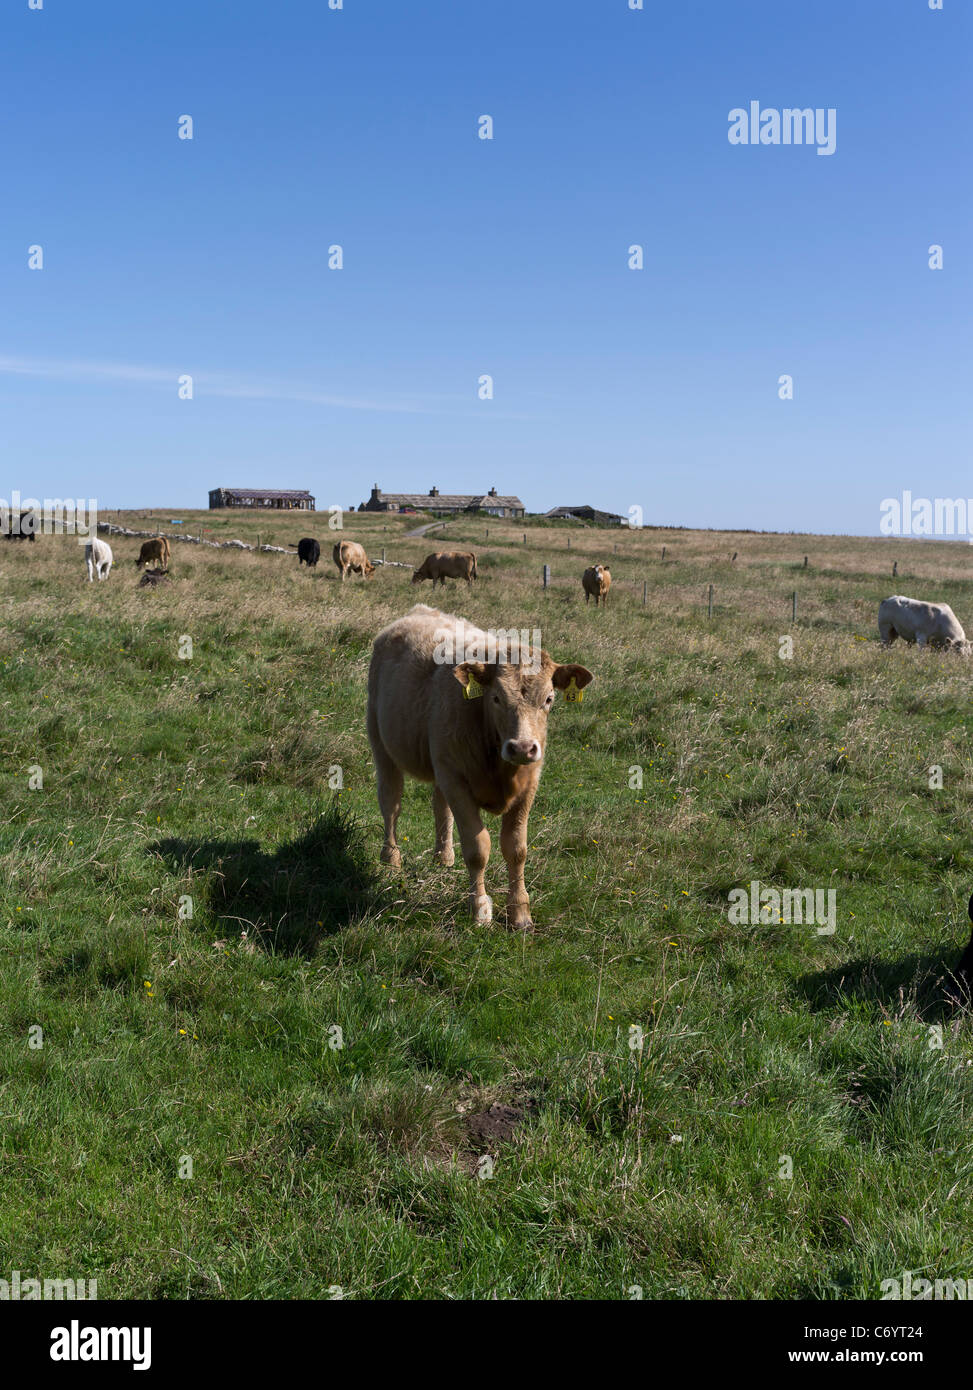 dh Hundland PAPA WESTRAY ORKNEY vaca de ternera escocesa en el campo de vacas cottage norte islotes escocia ganado de ternero Foto de stock